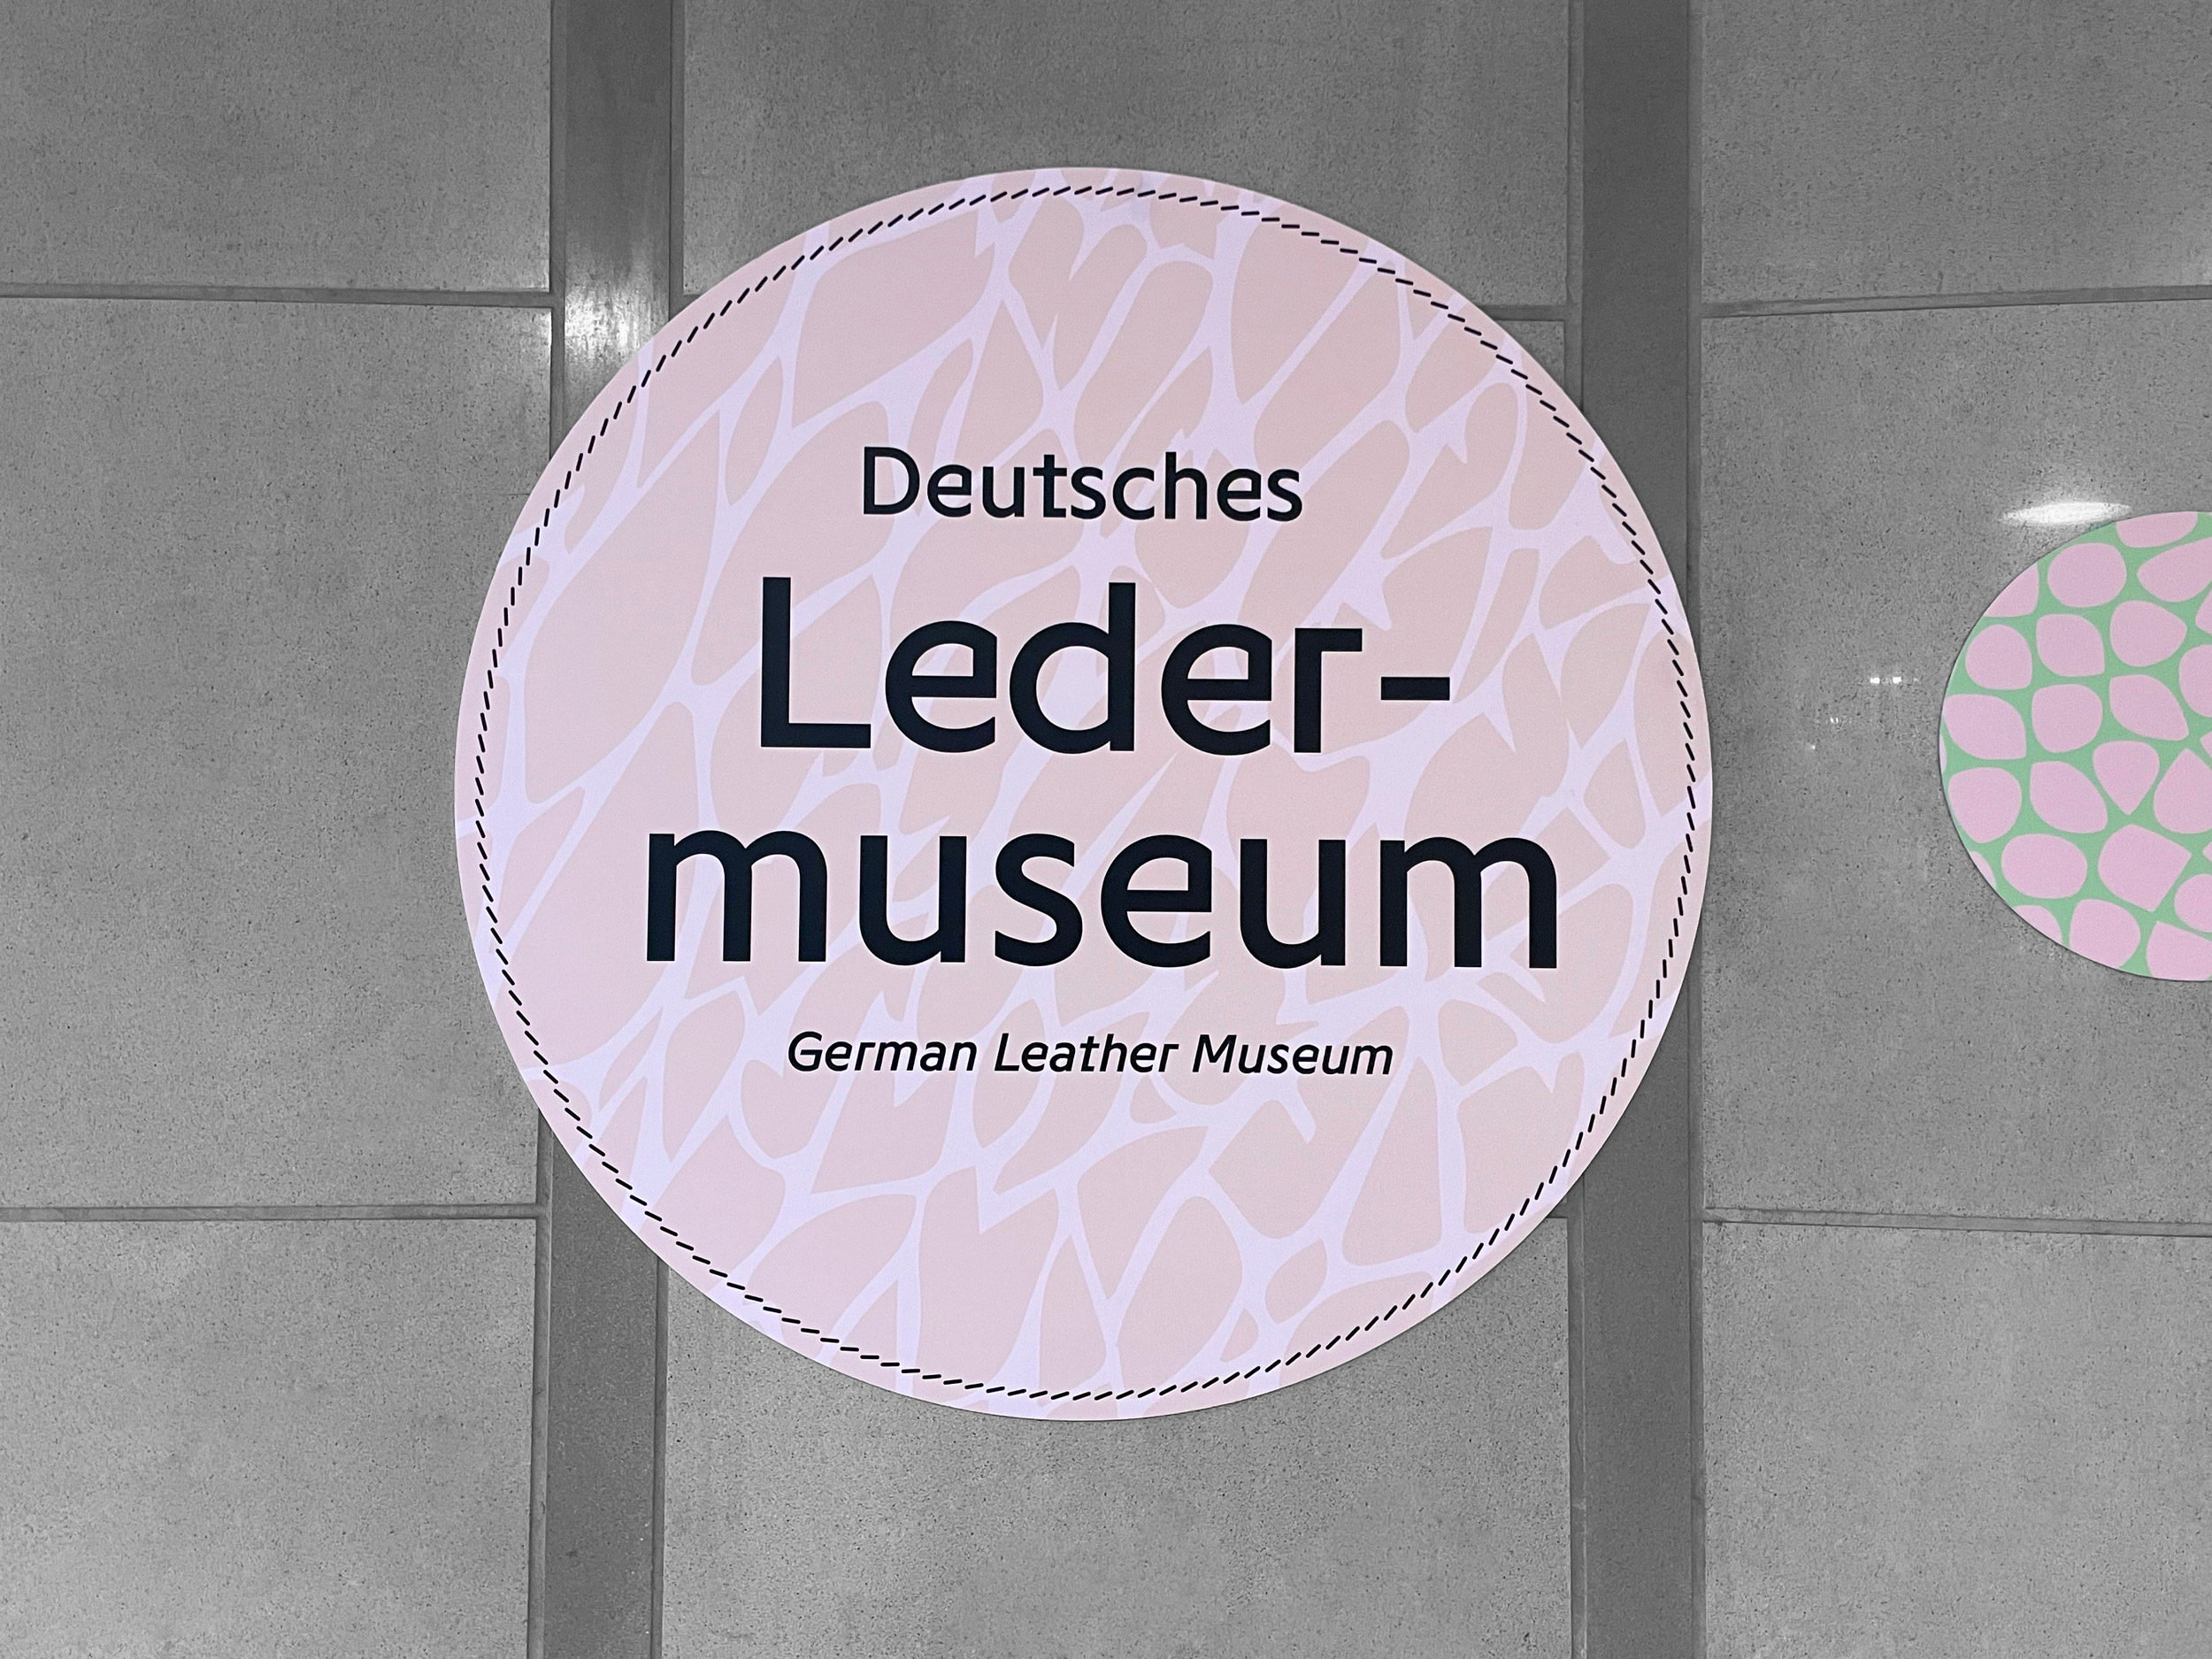 Offenbach Ledermuseum Orientierungs- & Leitsystem Deutsche Bahn Signage Spacedesign